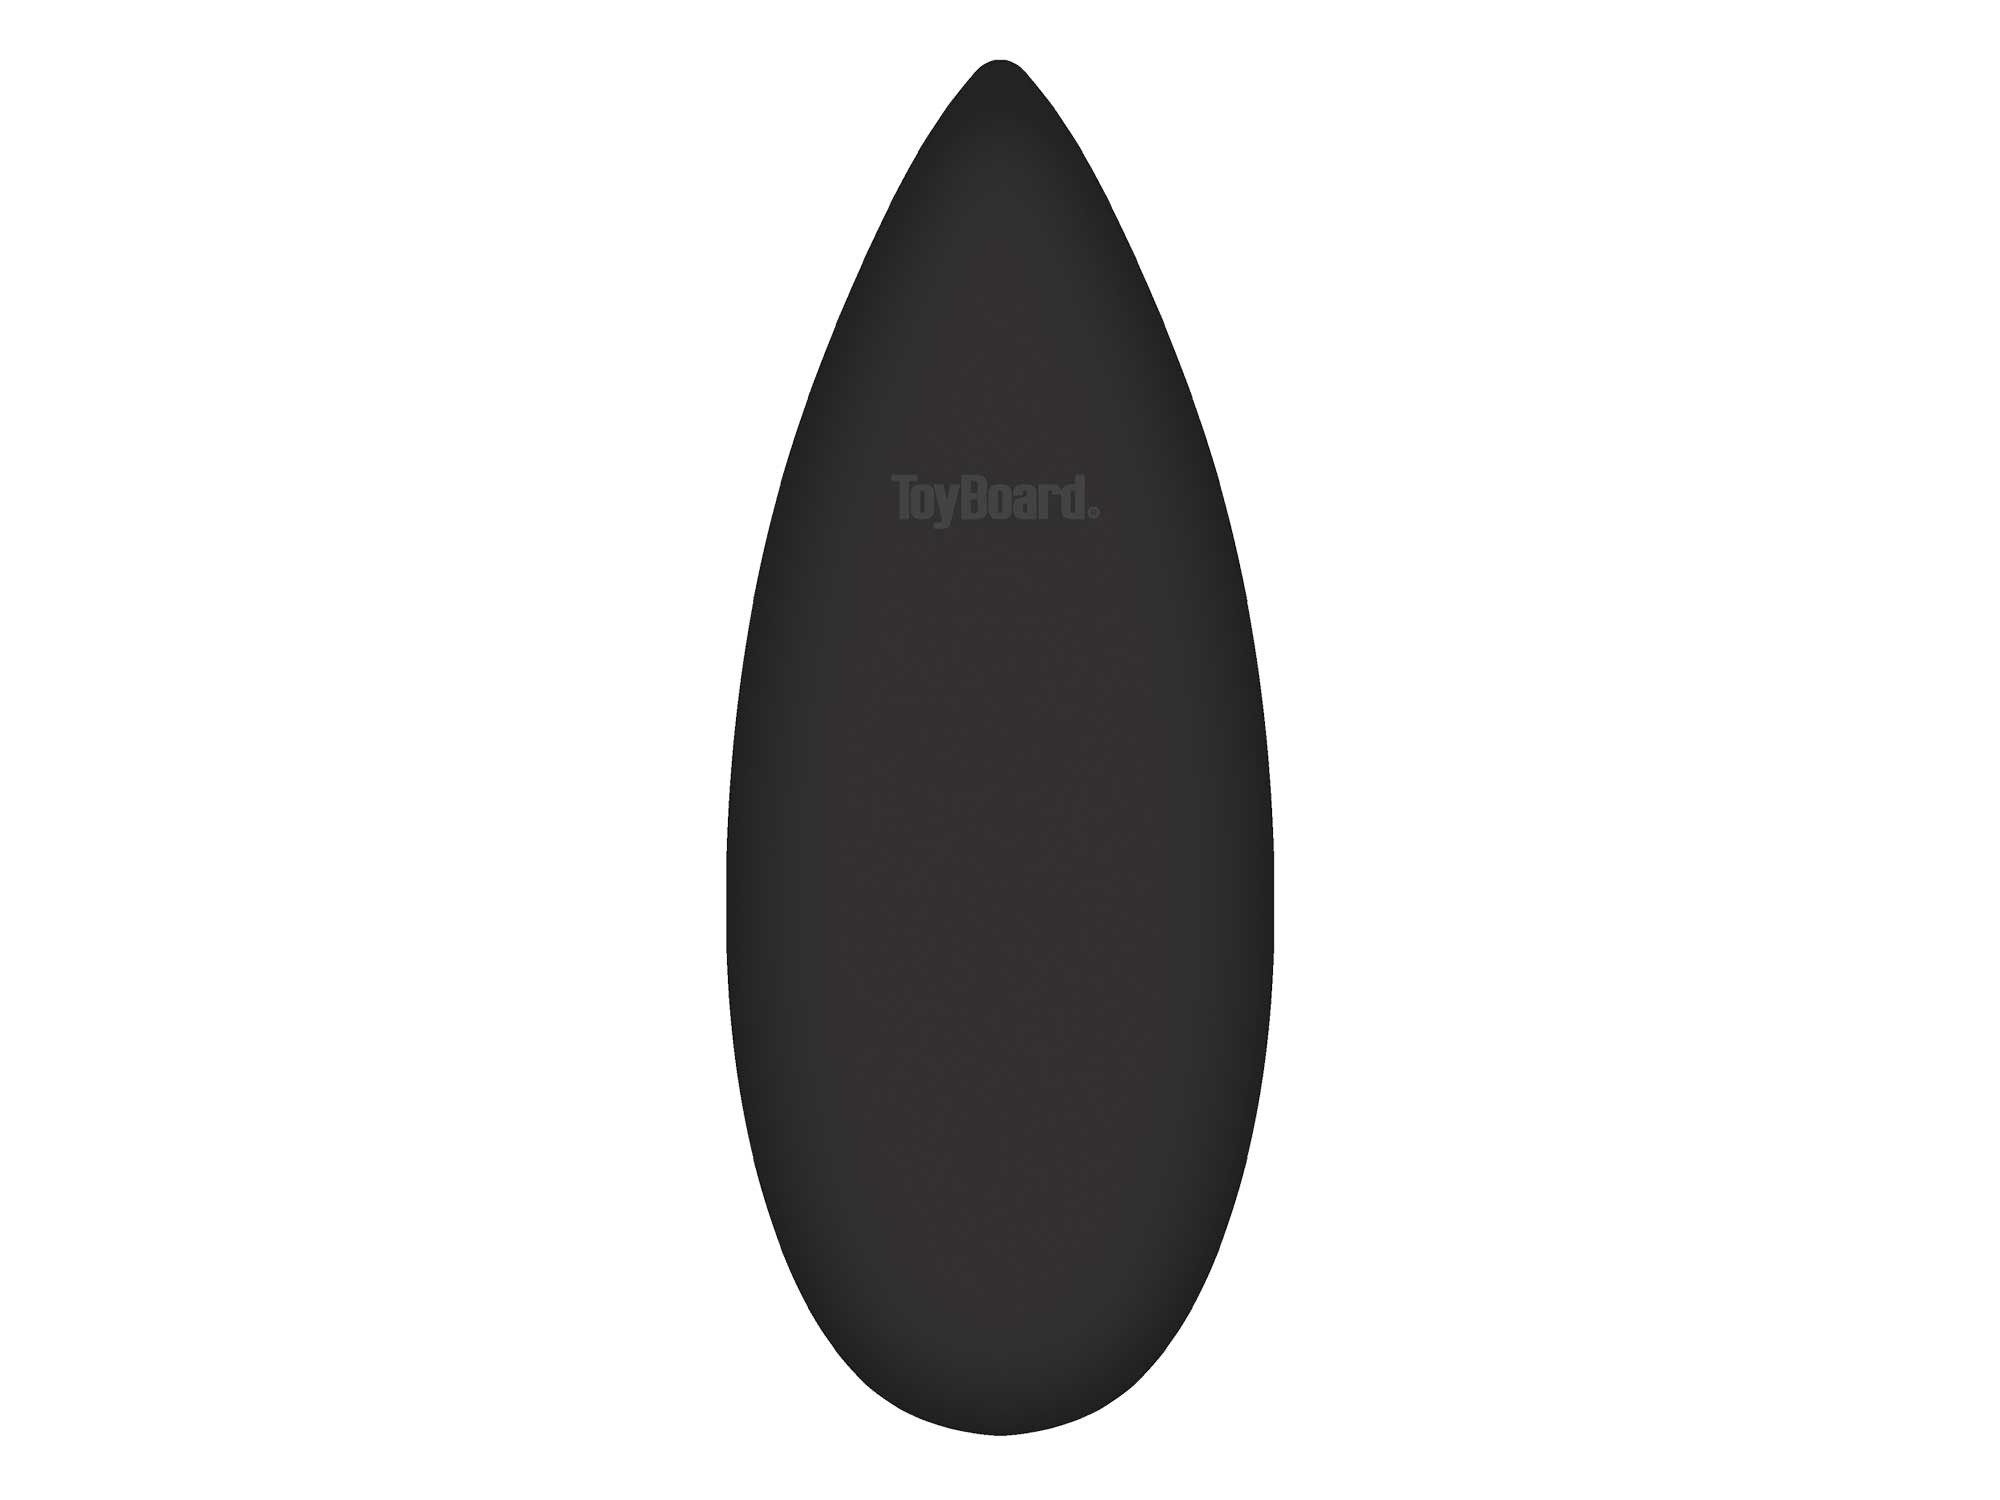 Plateau d'équilibre toyboard® black